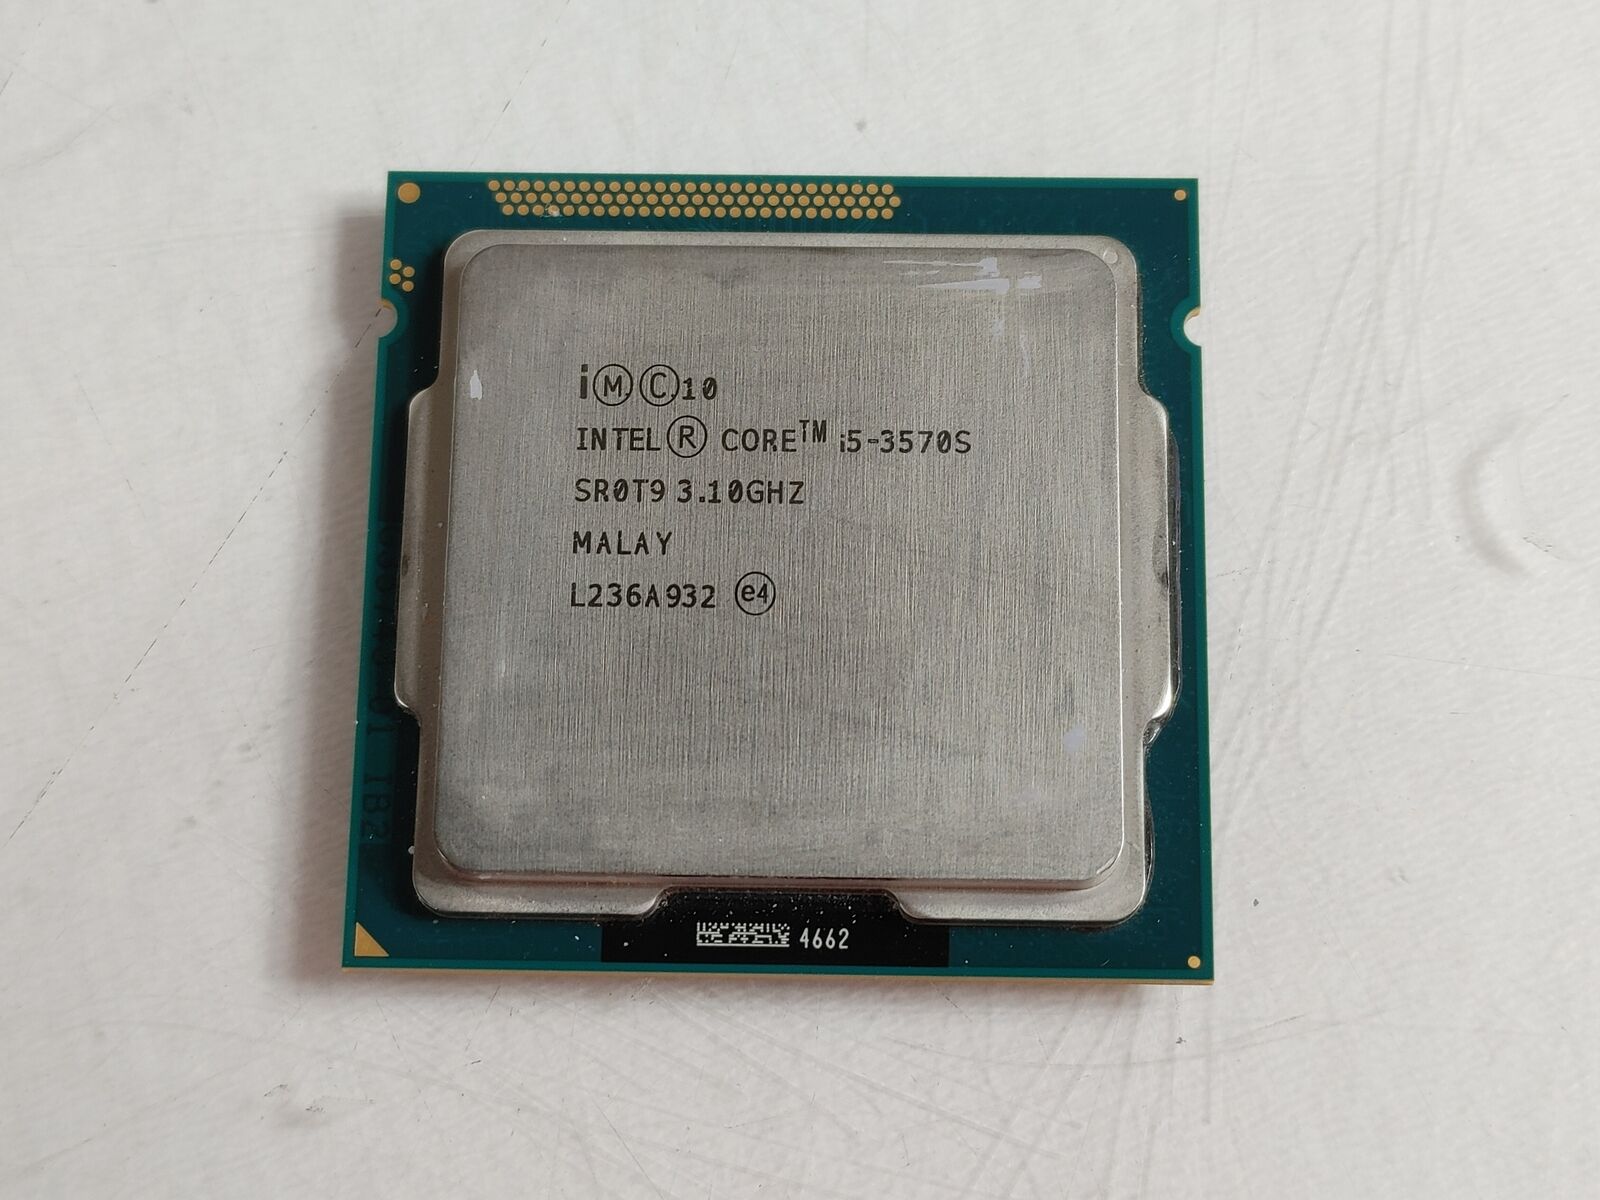 Intel Core i5-3570S 3.10 GHz LGA 1155 Desktop CPU Processor SR0T9